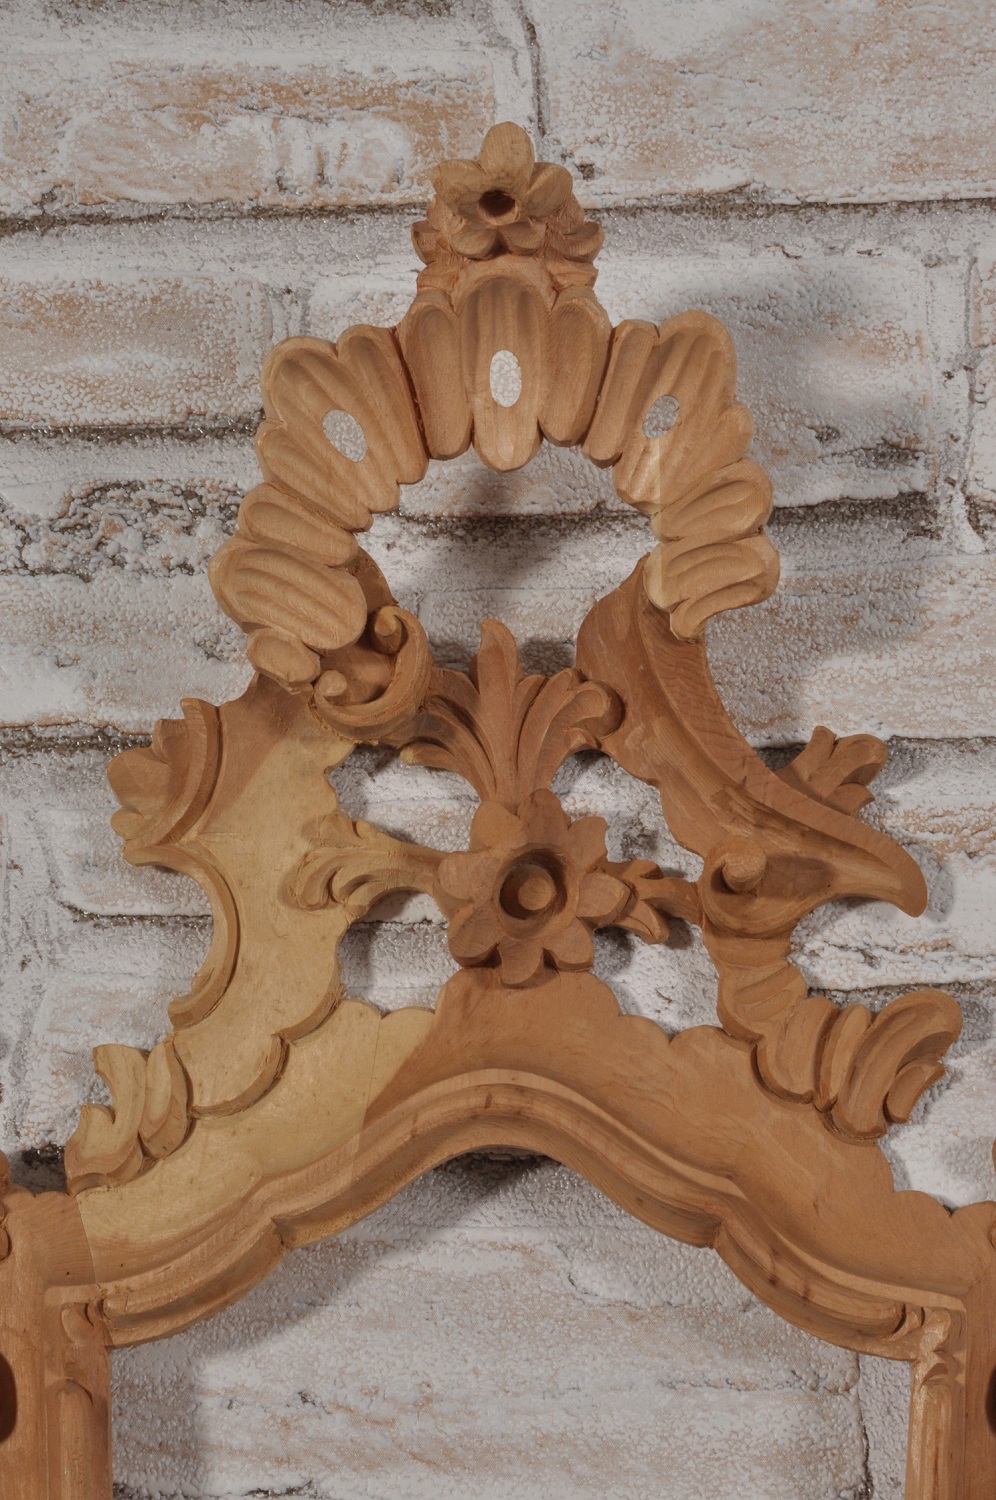 ventola specchiera veneziana di piccole dimensioni intagliata a mano con volute e fregi di valore e pregio costruita artigianalmente